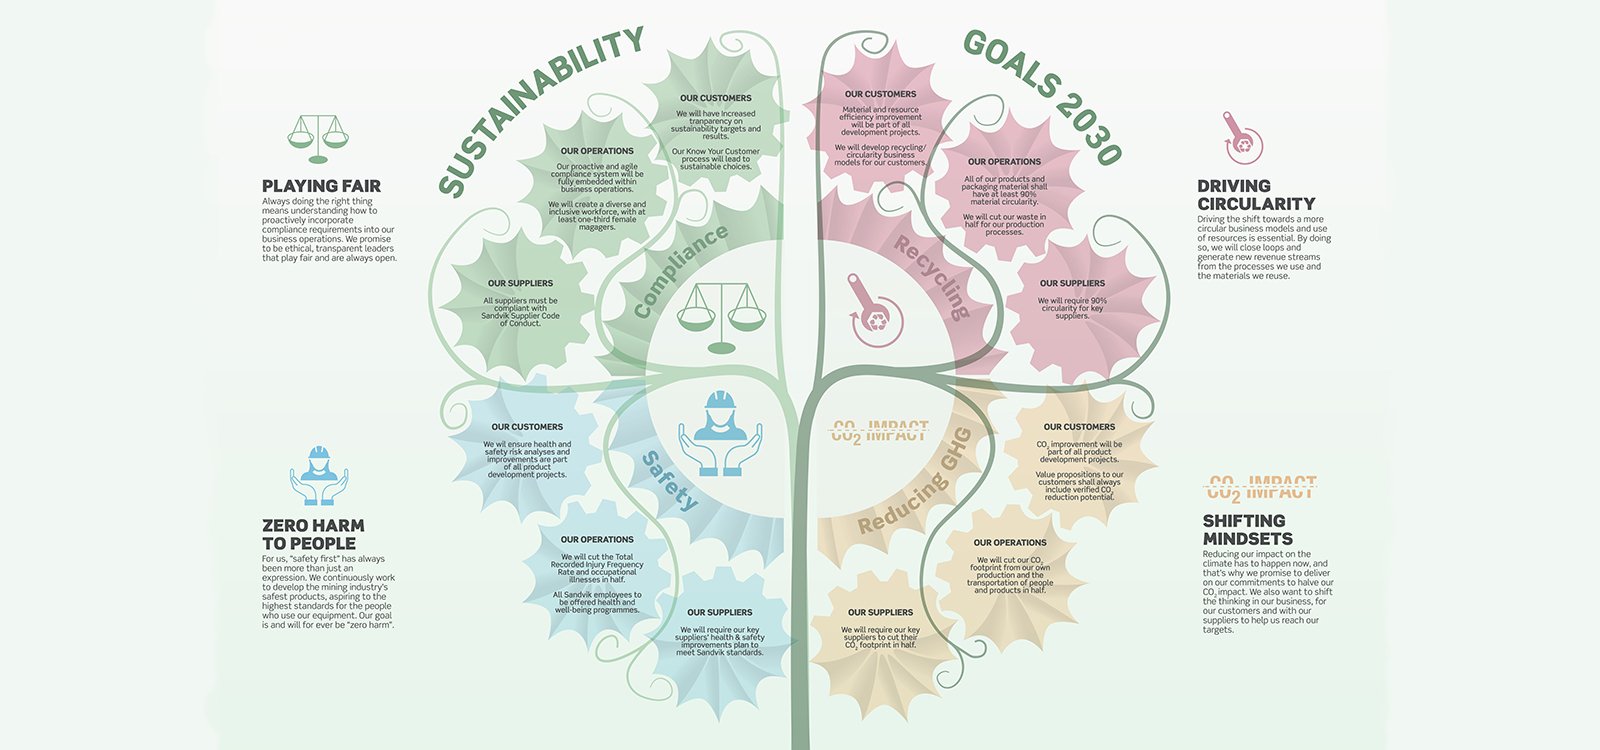 <p>Sécurité, réduction des gaz à effet de serre, circularité et conformité. Les quatre objectifs de développement durable 2030 de Sandvik Mining and Rock Technology se verront attribuer la même importance que les objectifs commerciaux ordinaires.</p>
